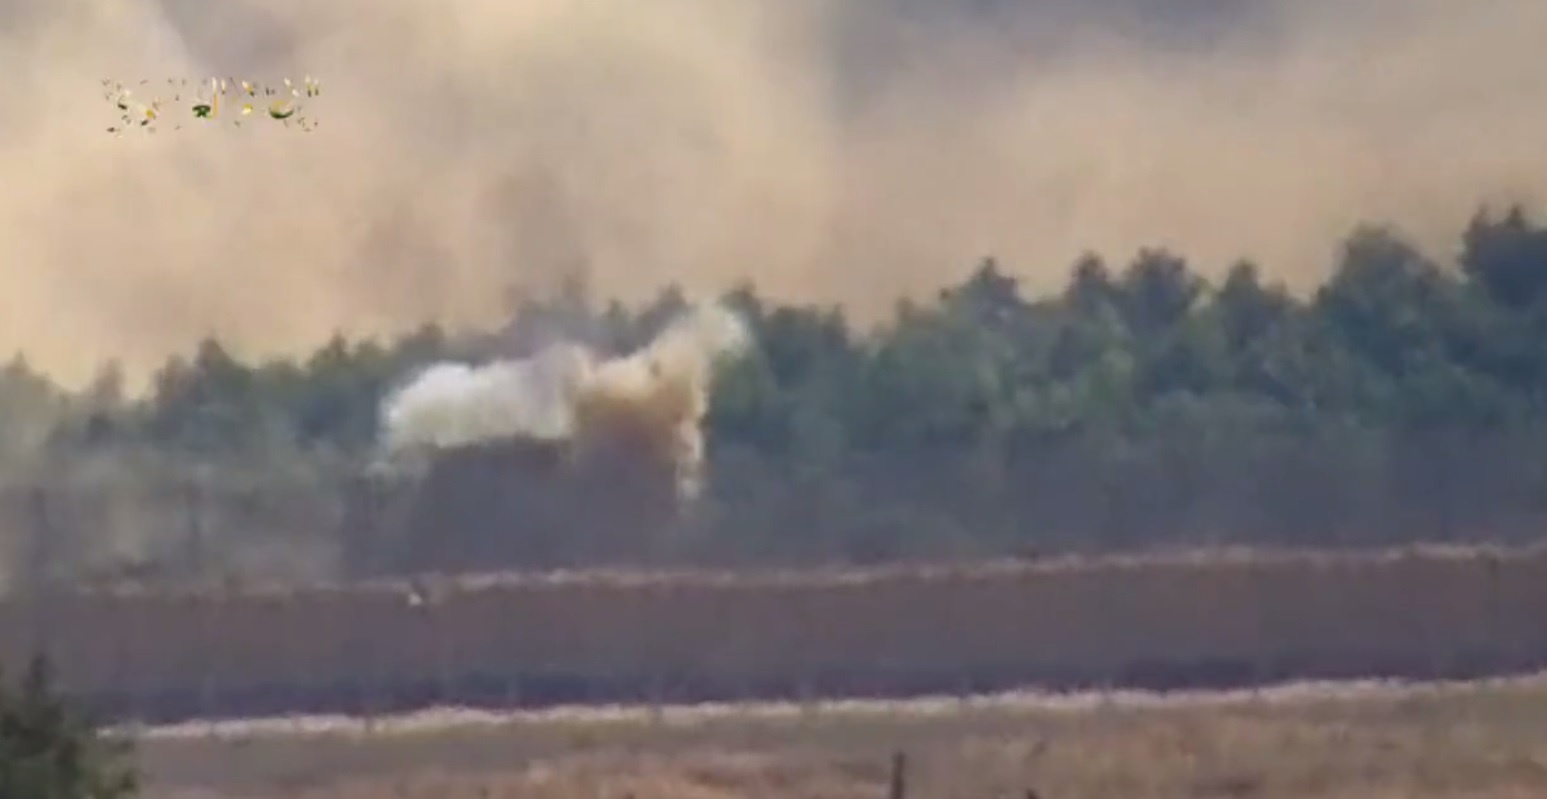 Scenes of an Israeli tank bombing published by Al-Qassam